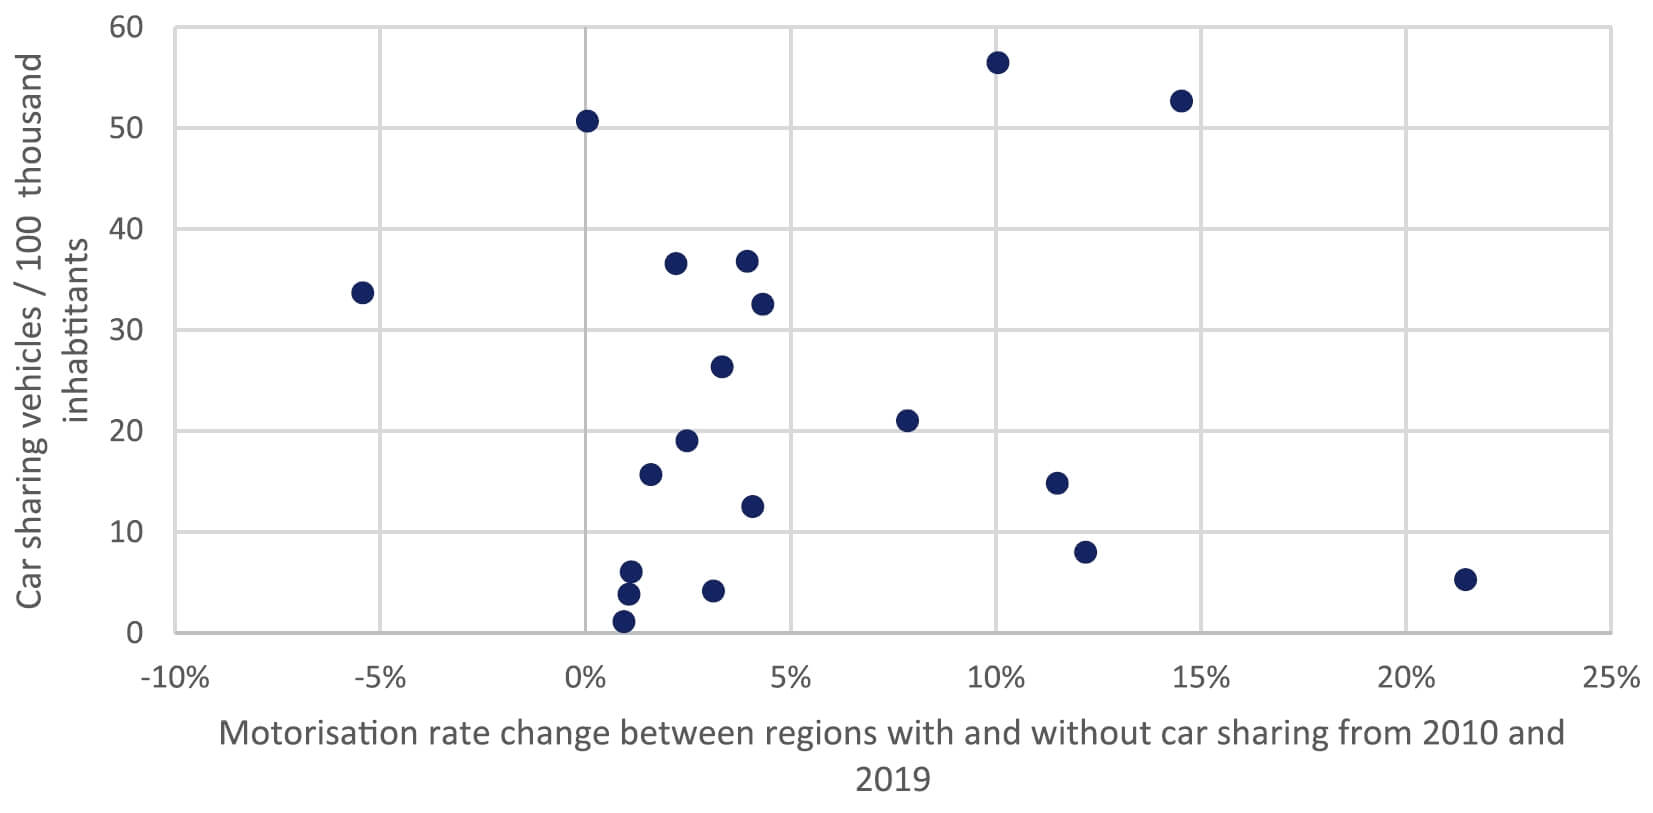 entwicklung motorisierungsrate carsharing regionen eu27